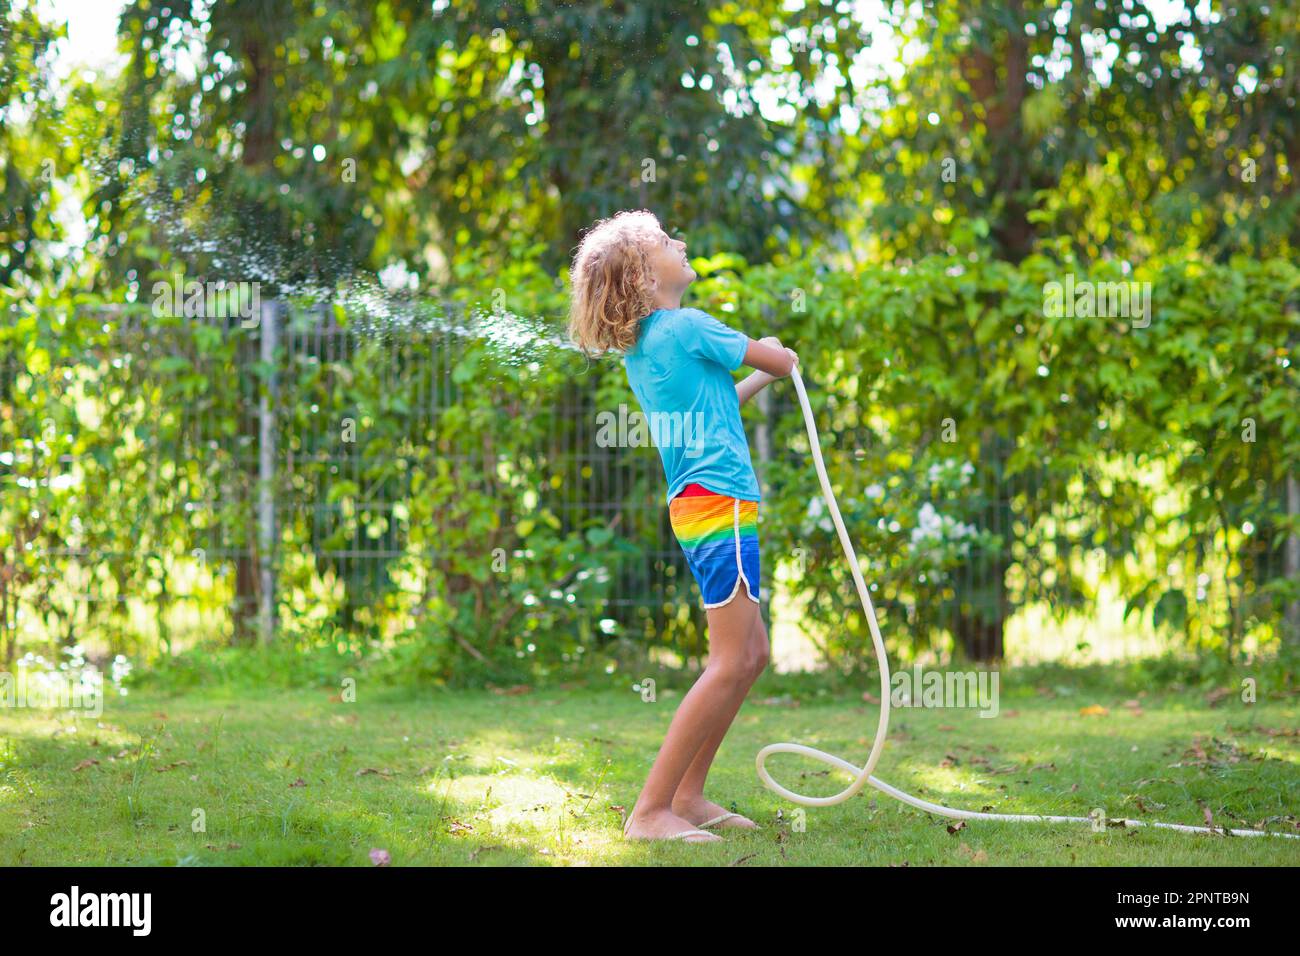 Kinder spielen mit einem Wasserschlauch. Sommergarten Outdoor Spaß für  Kinder. Ein Junge spritzt Wasser an einem heißen, sonnigen Tag. Kinder, die  Pflanzen im Garten bewässern Stockfotografie - Alamy